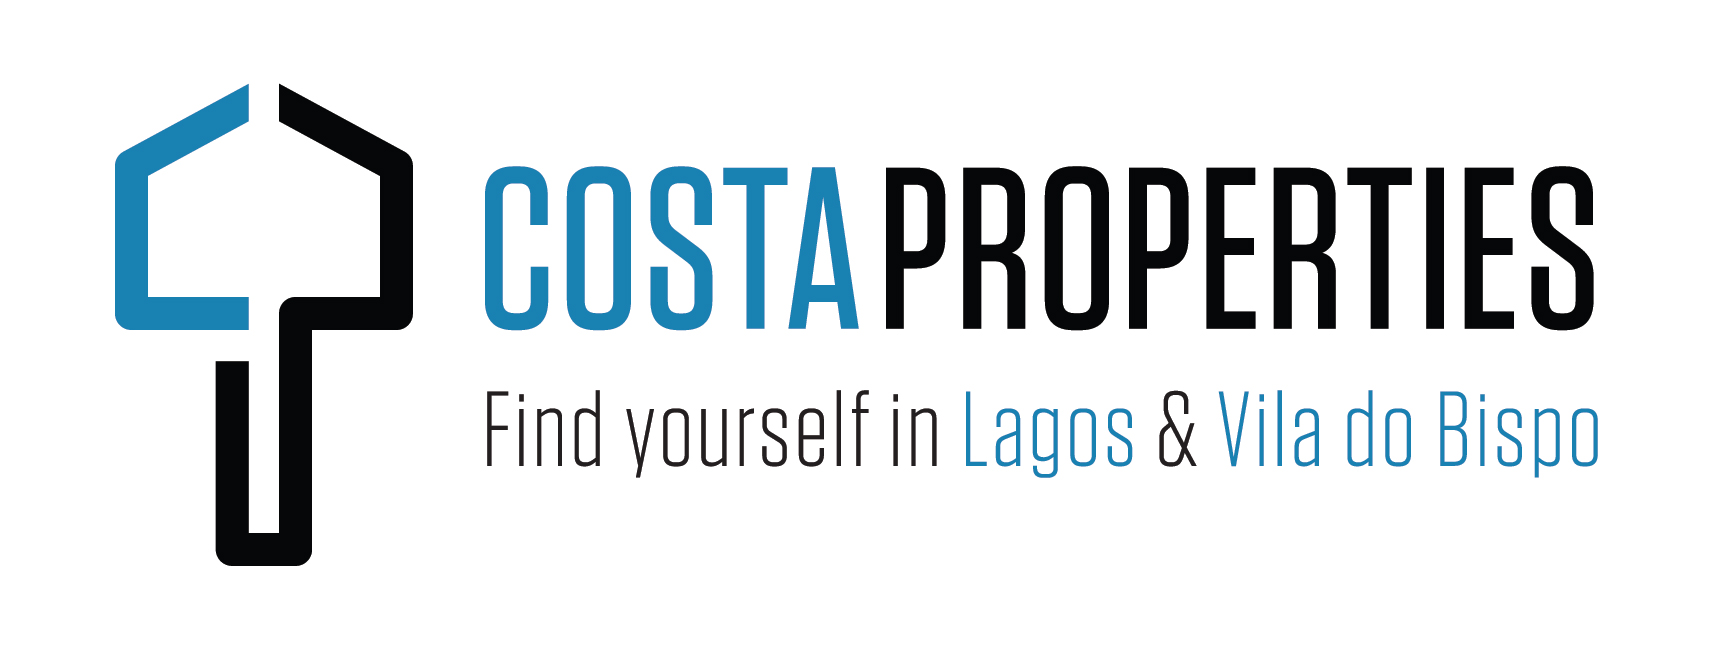 Costa Properties